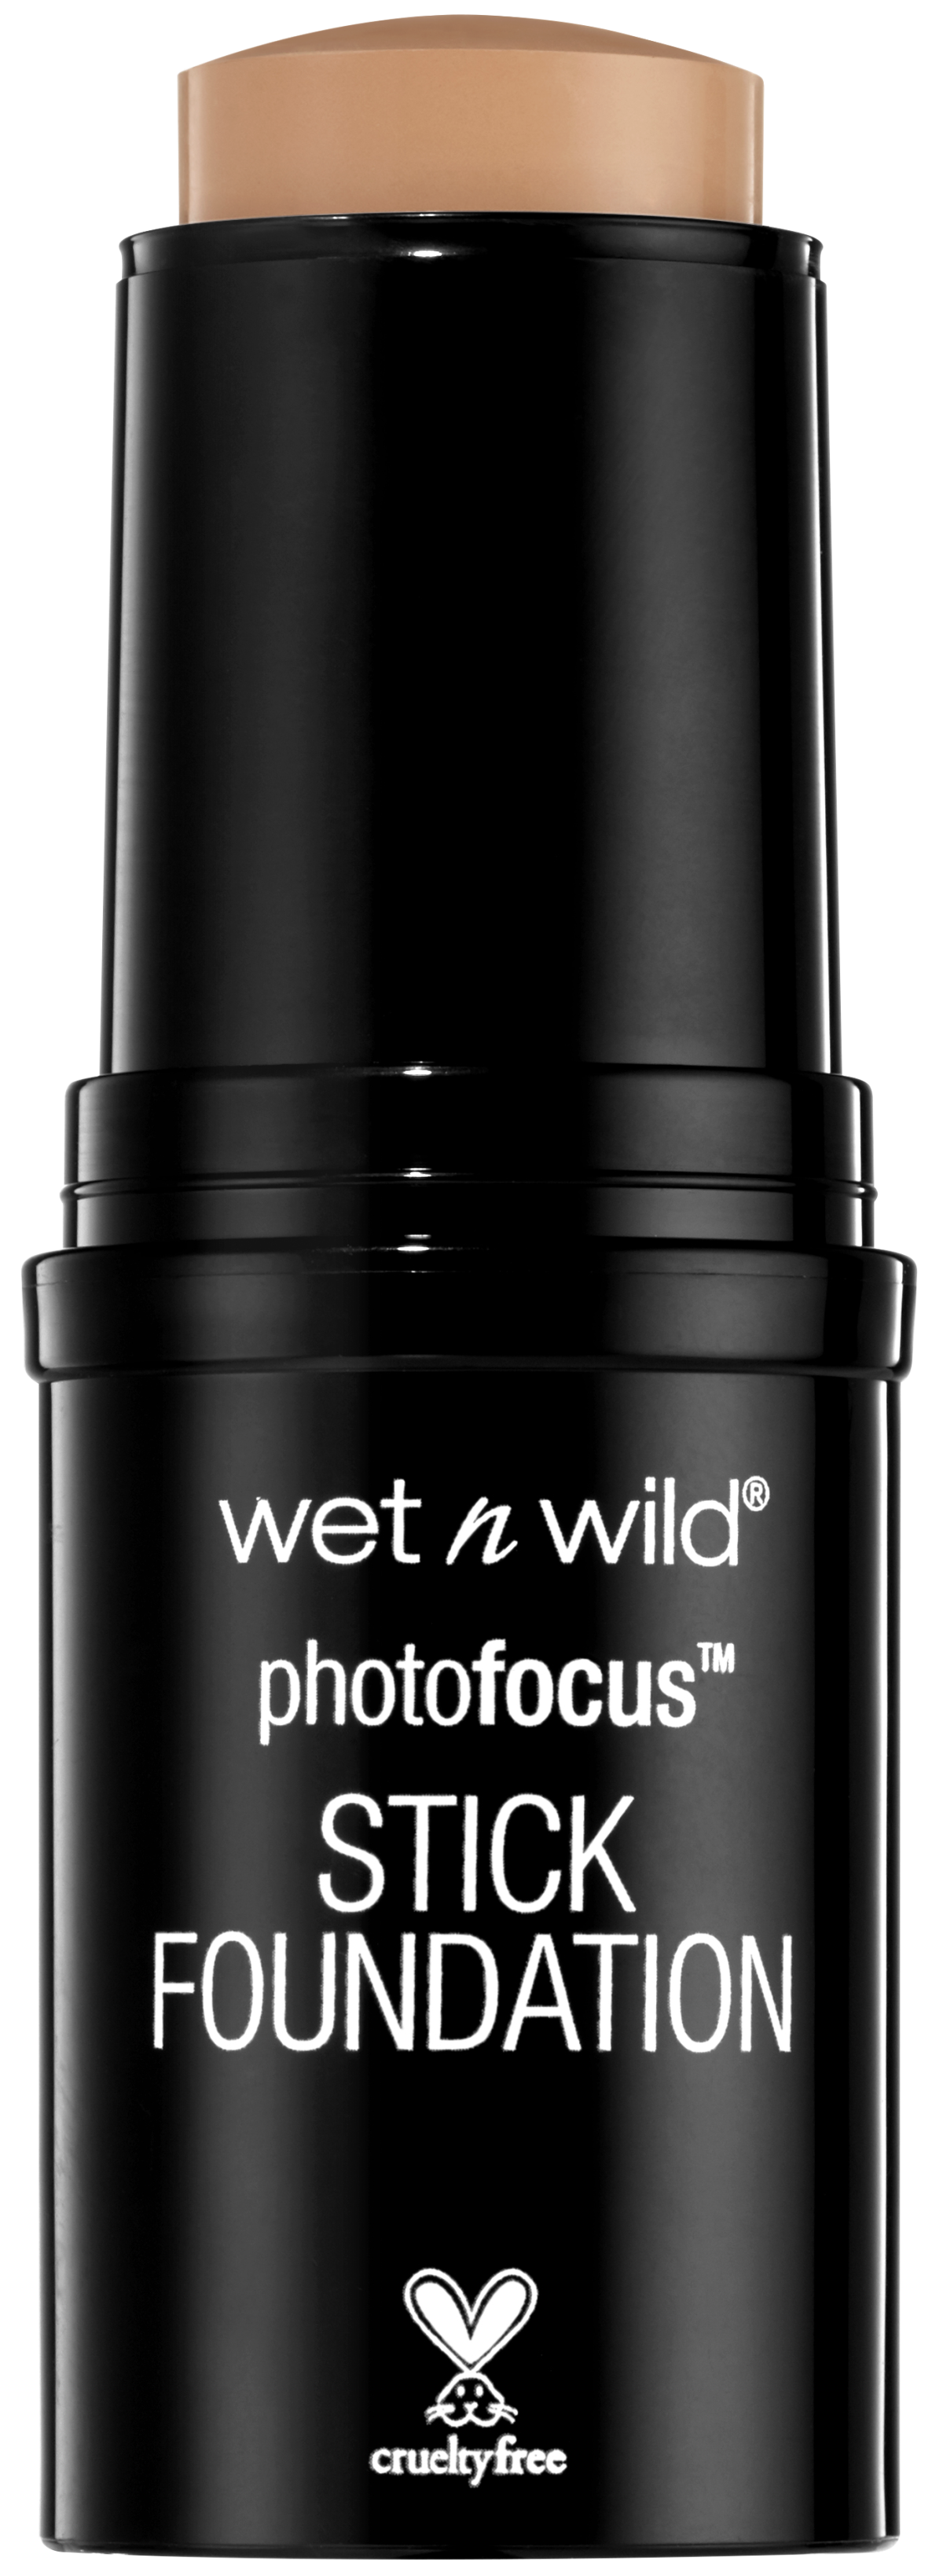 wet n wild photo focus foundation stick